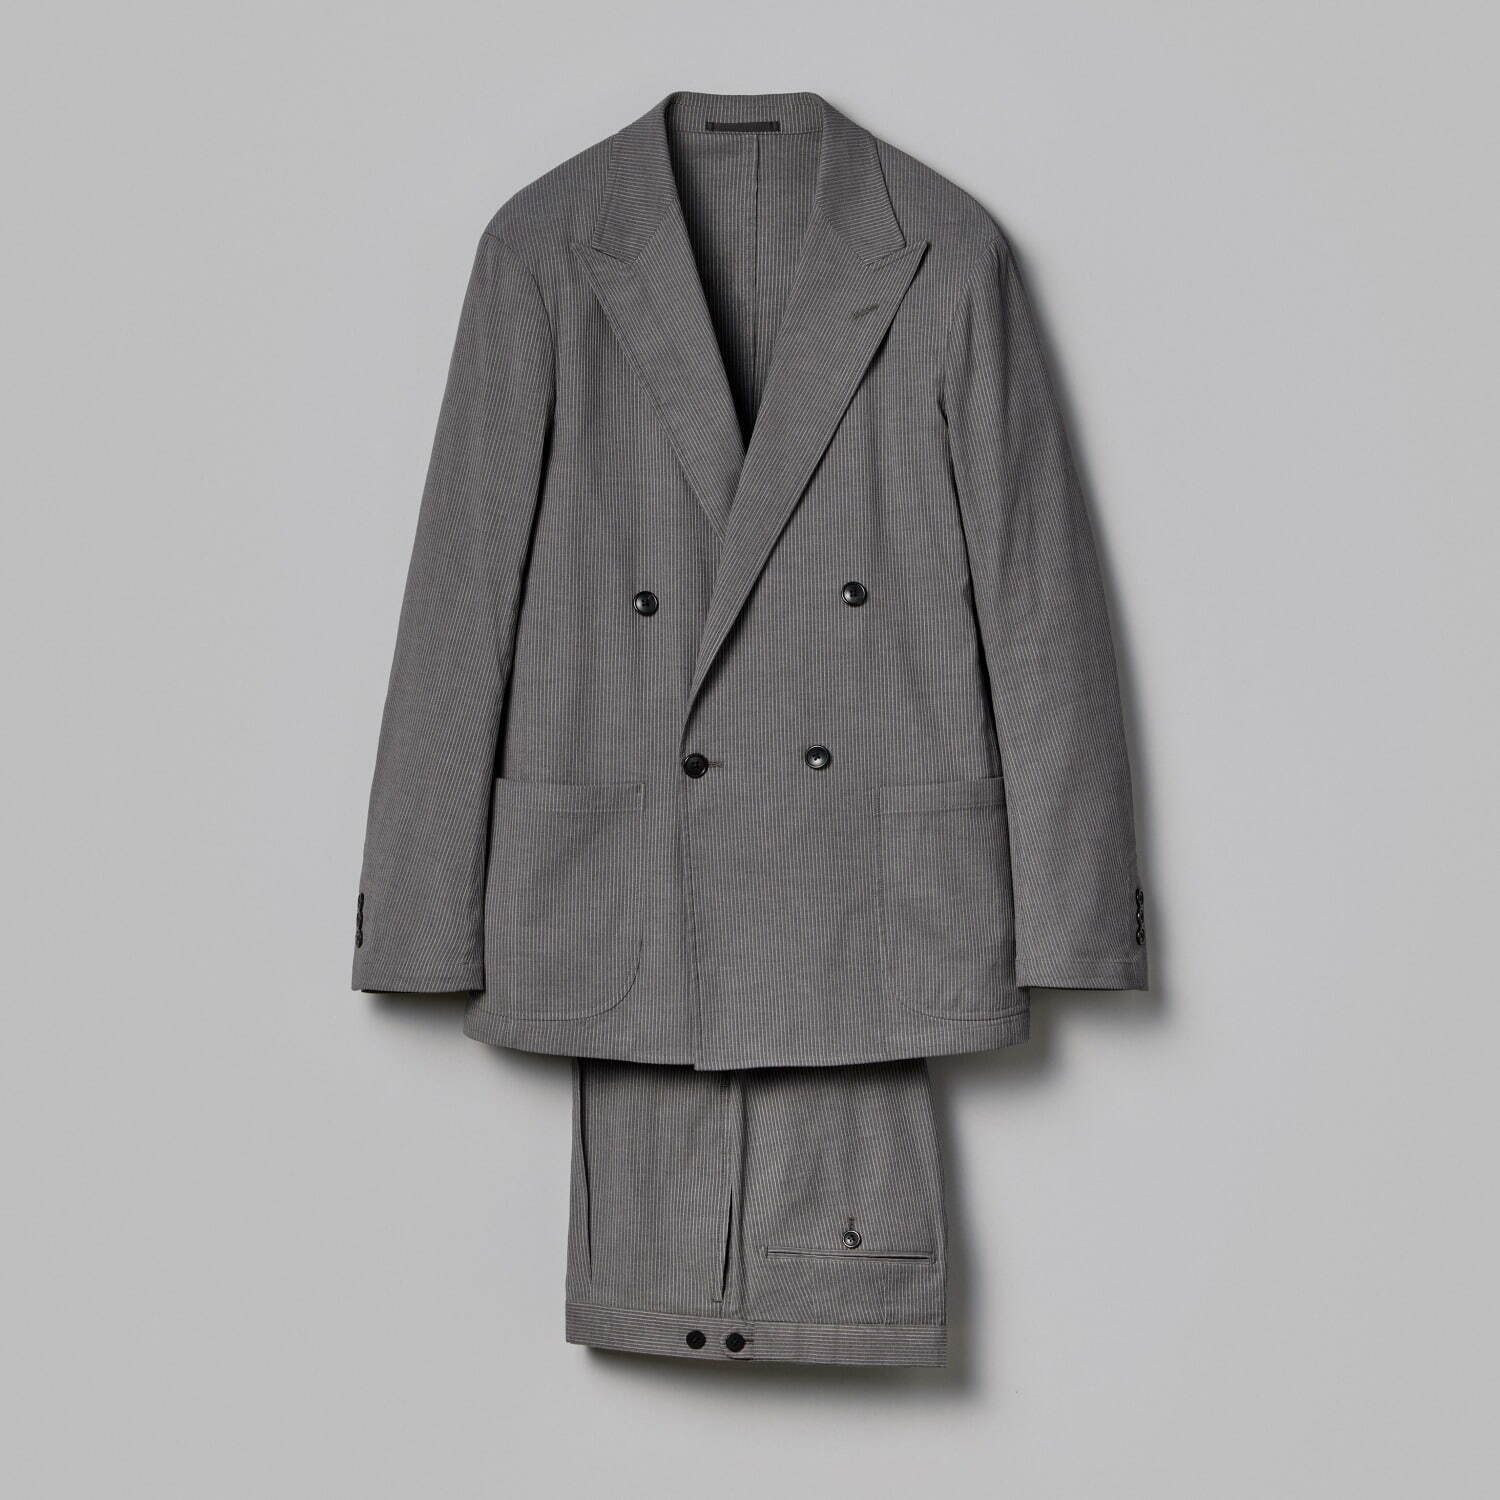 ユナイテッドアローズ コードレーン生地のジャケット 49,500円、パンツ 19,800円